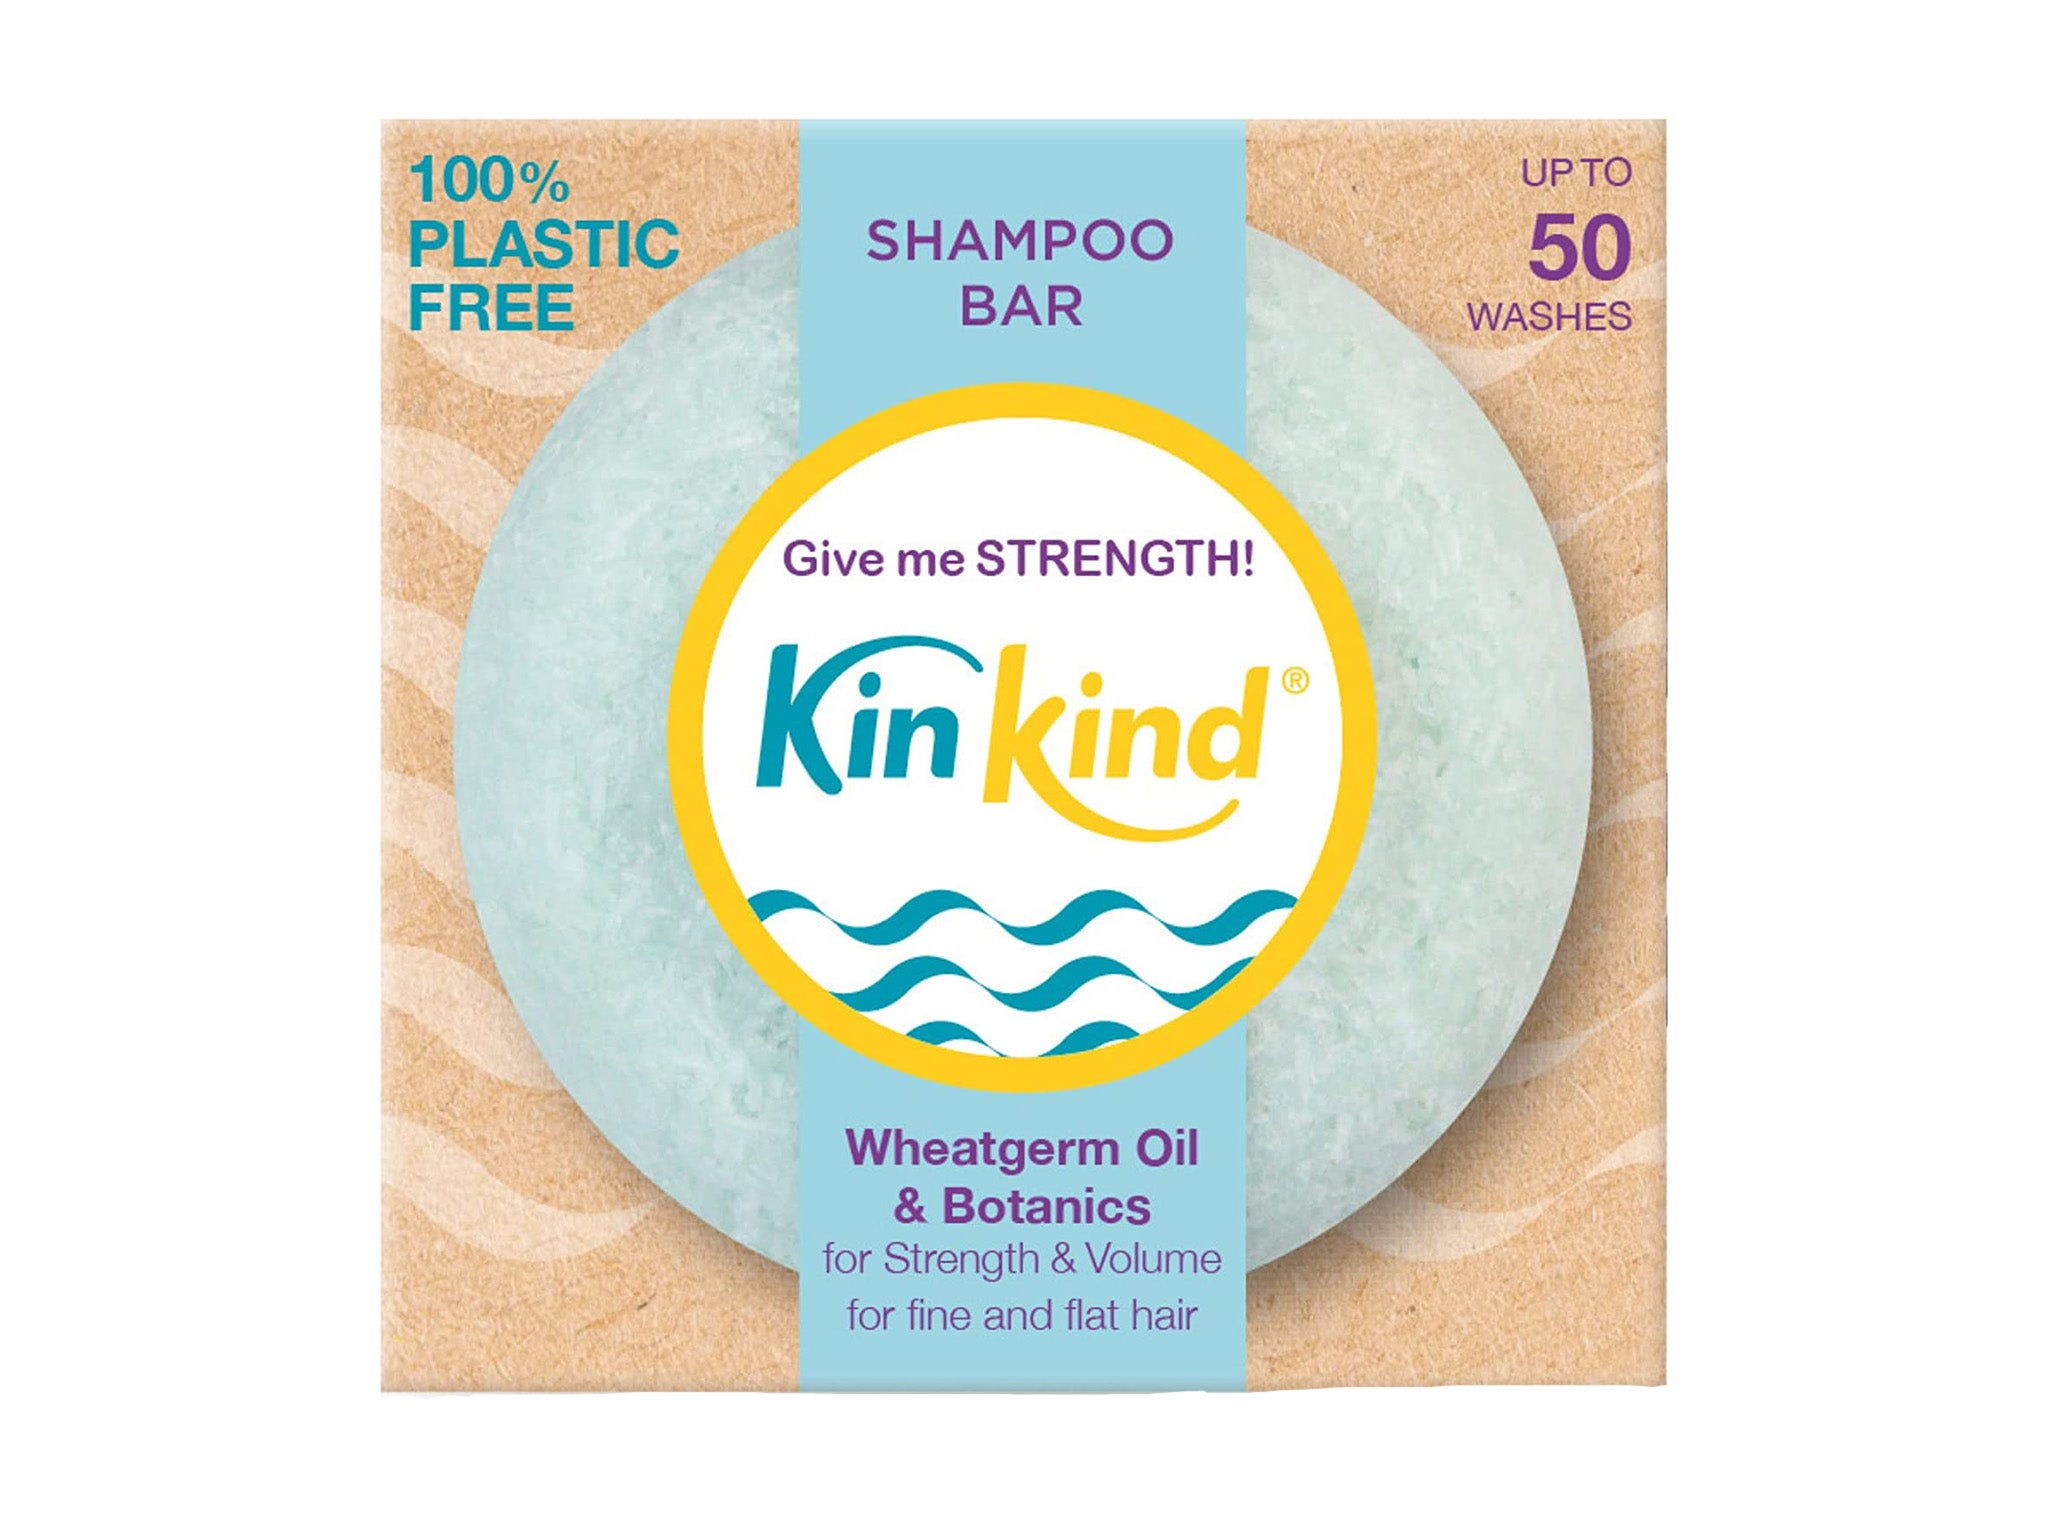 Kinkind give me strength shampoo bar 